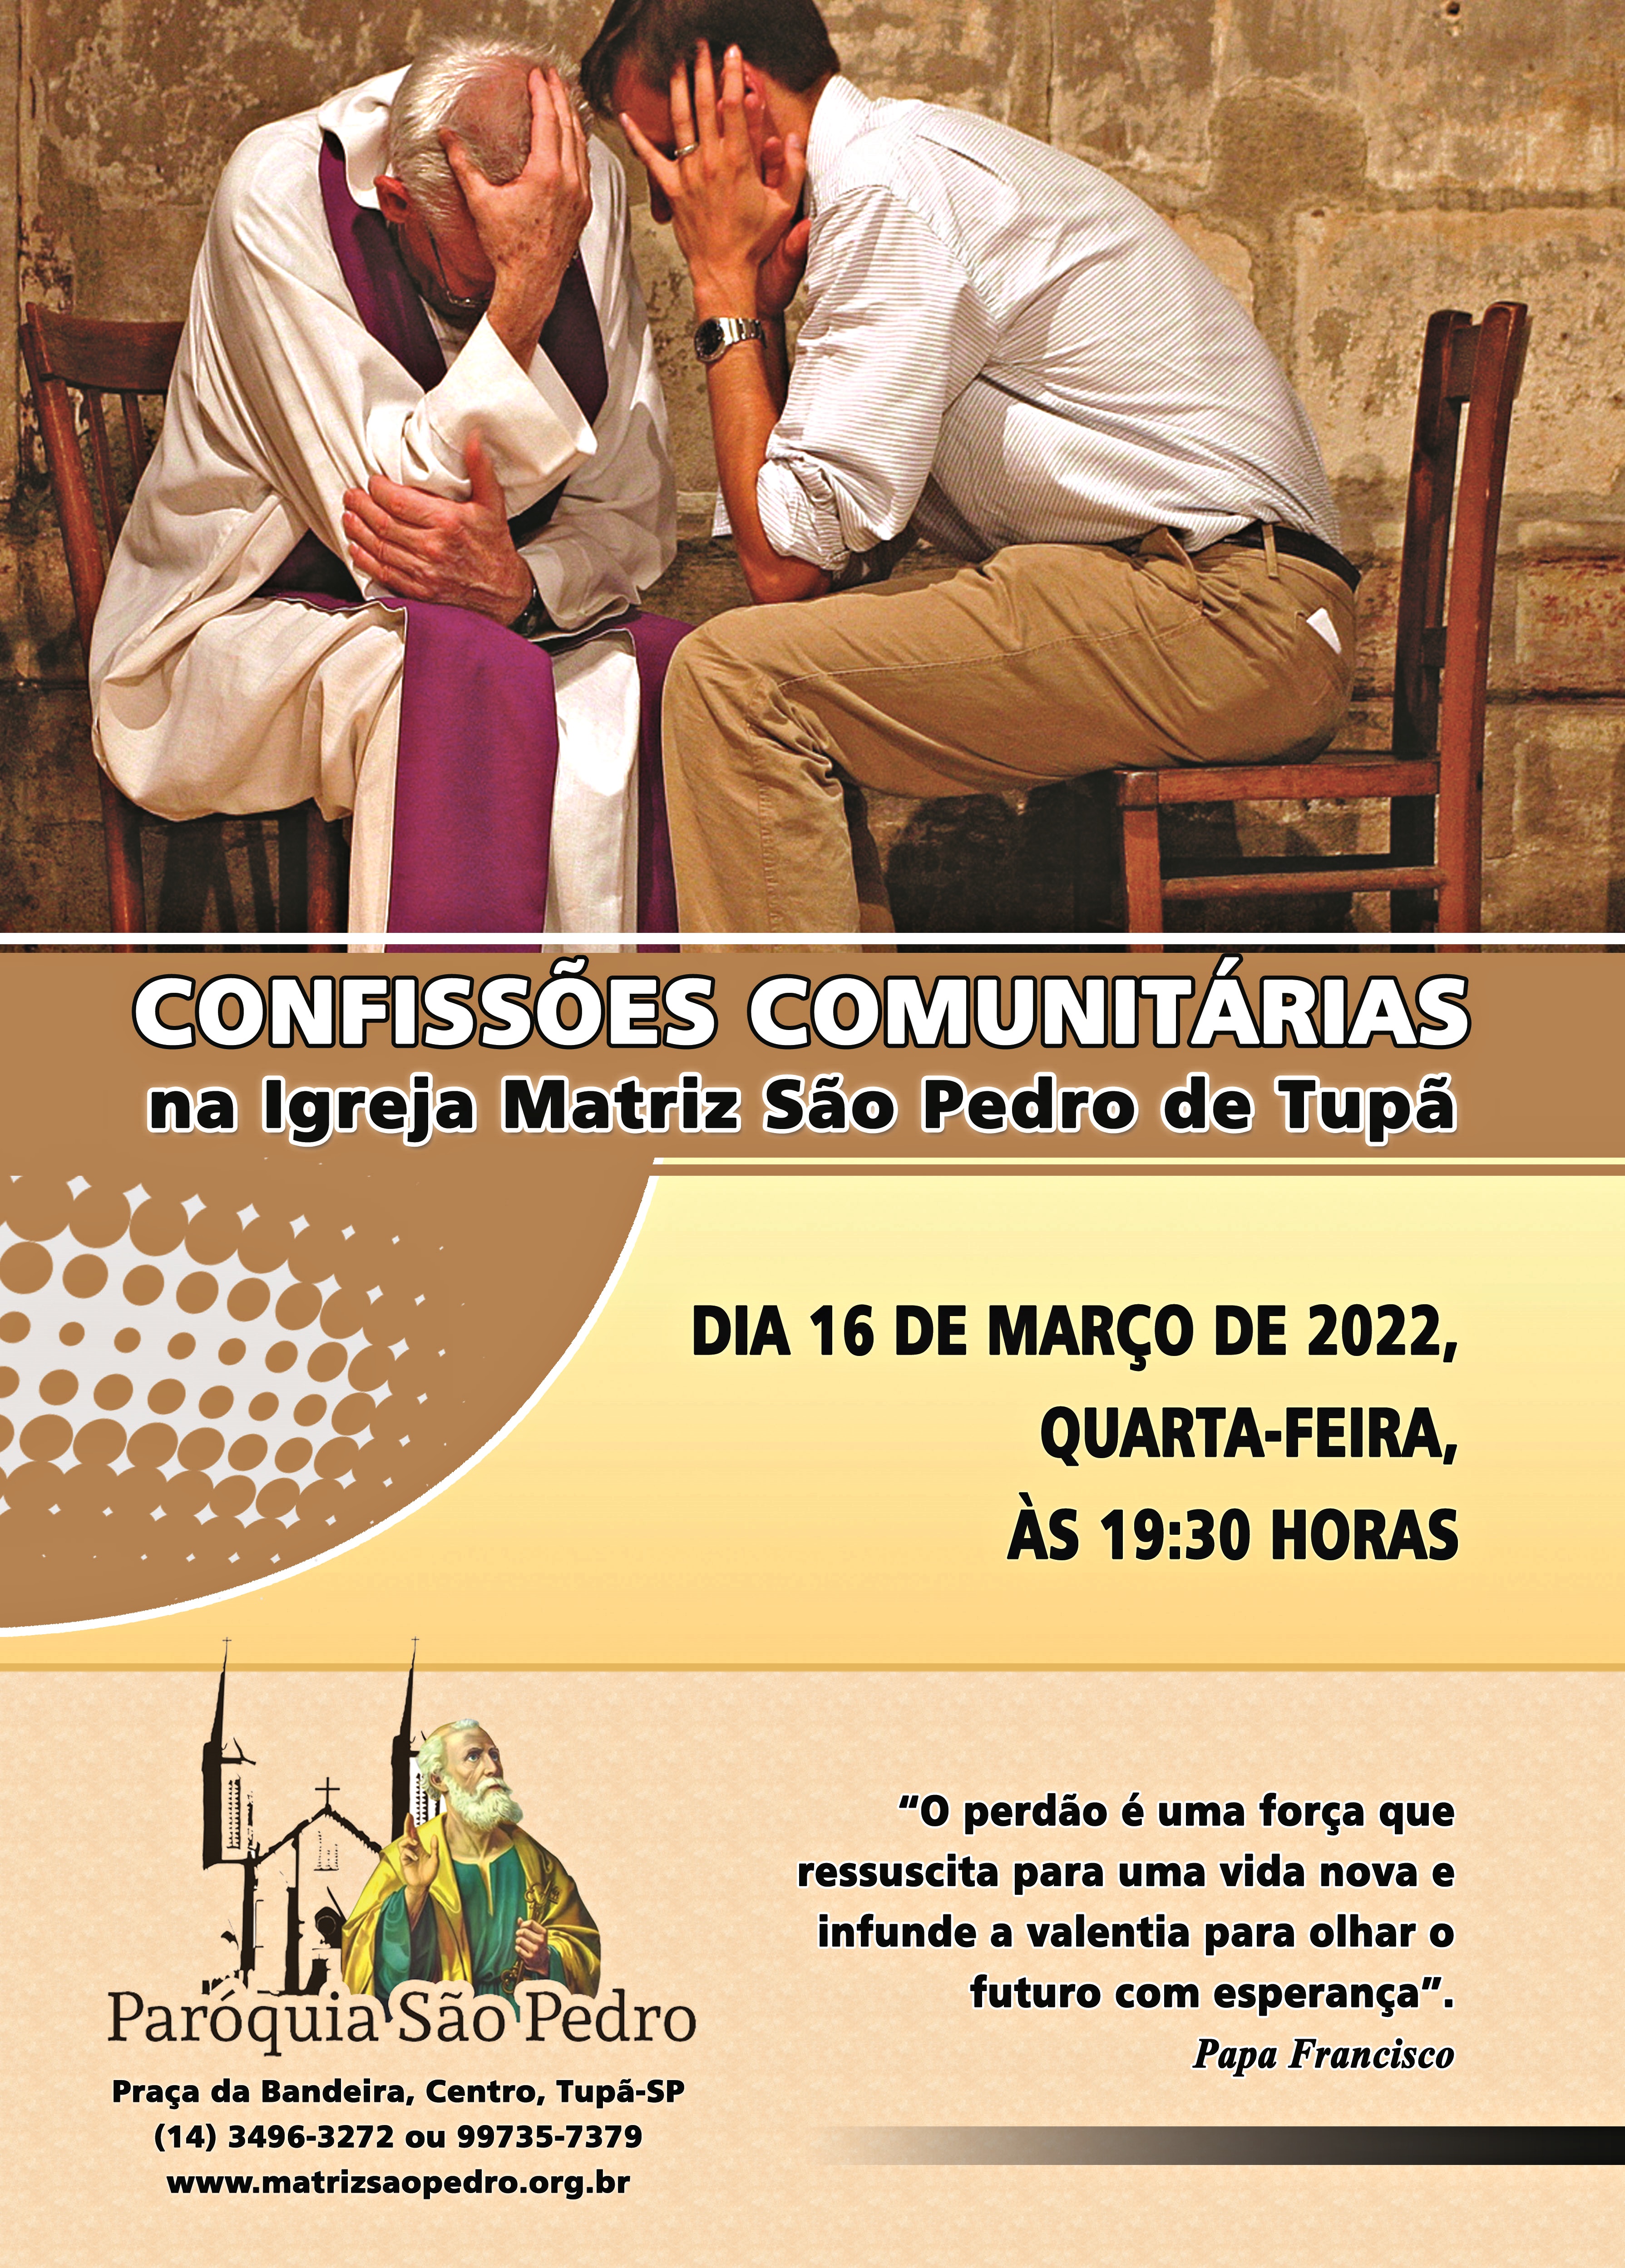 Confissões Comunitárias da Quaresma serão realizadas na São Pedro de Tupã